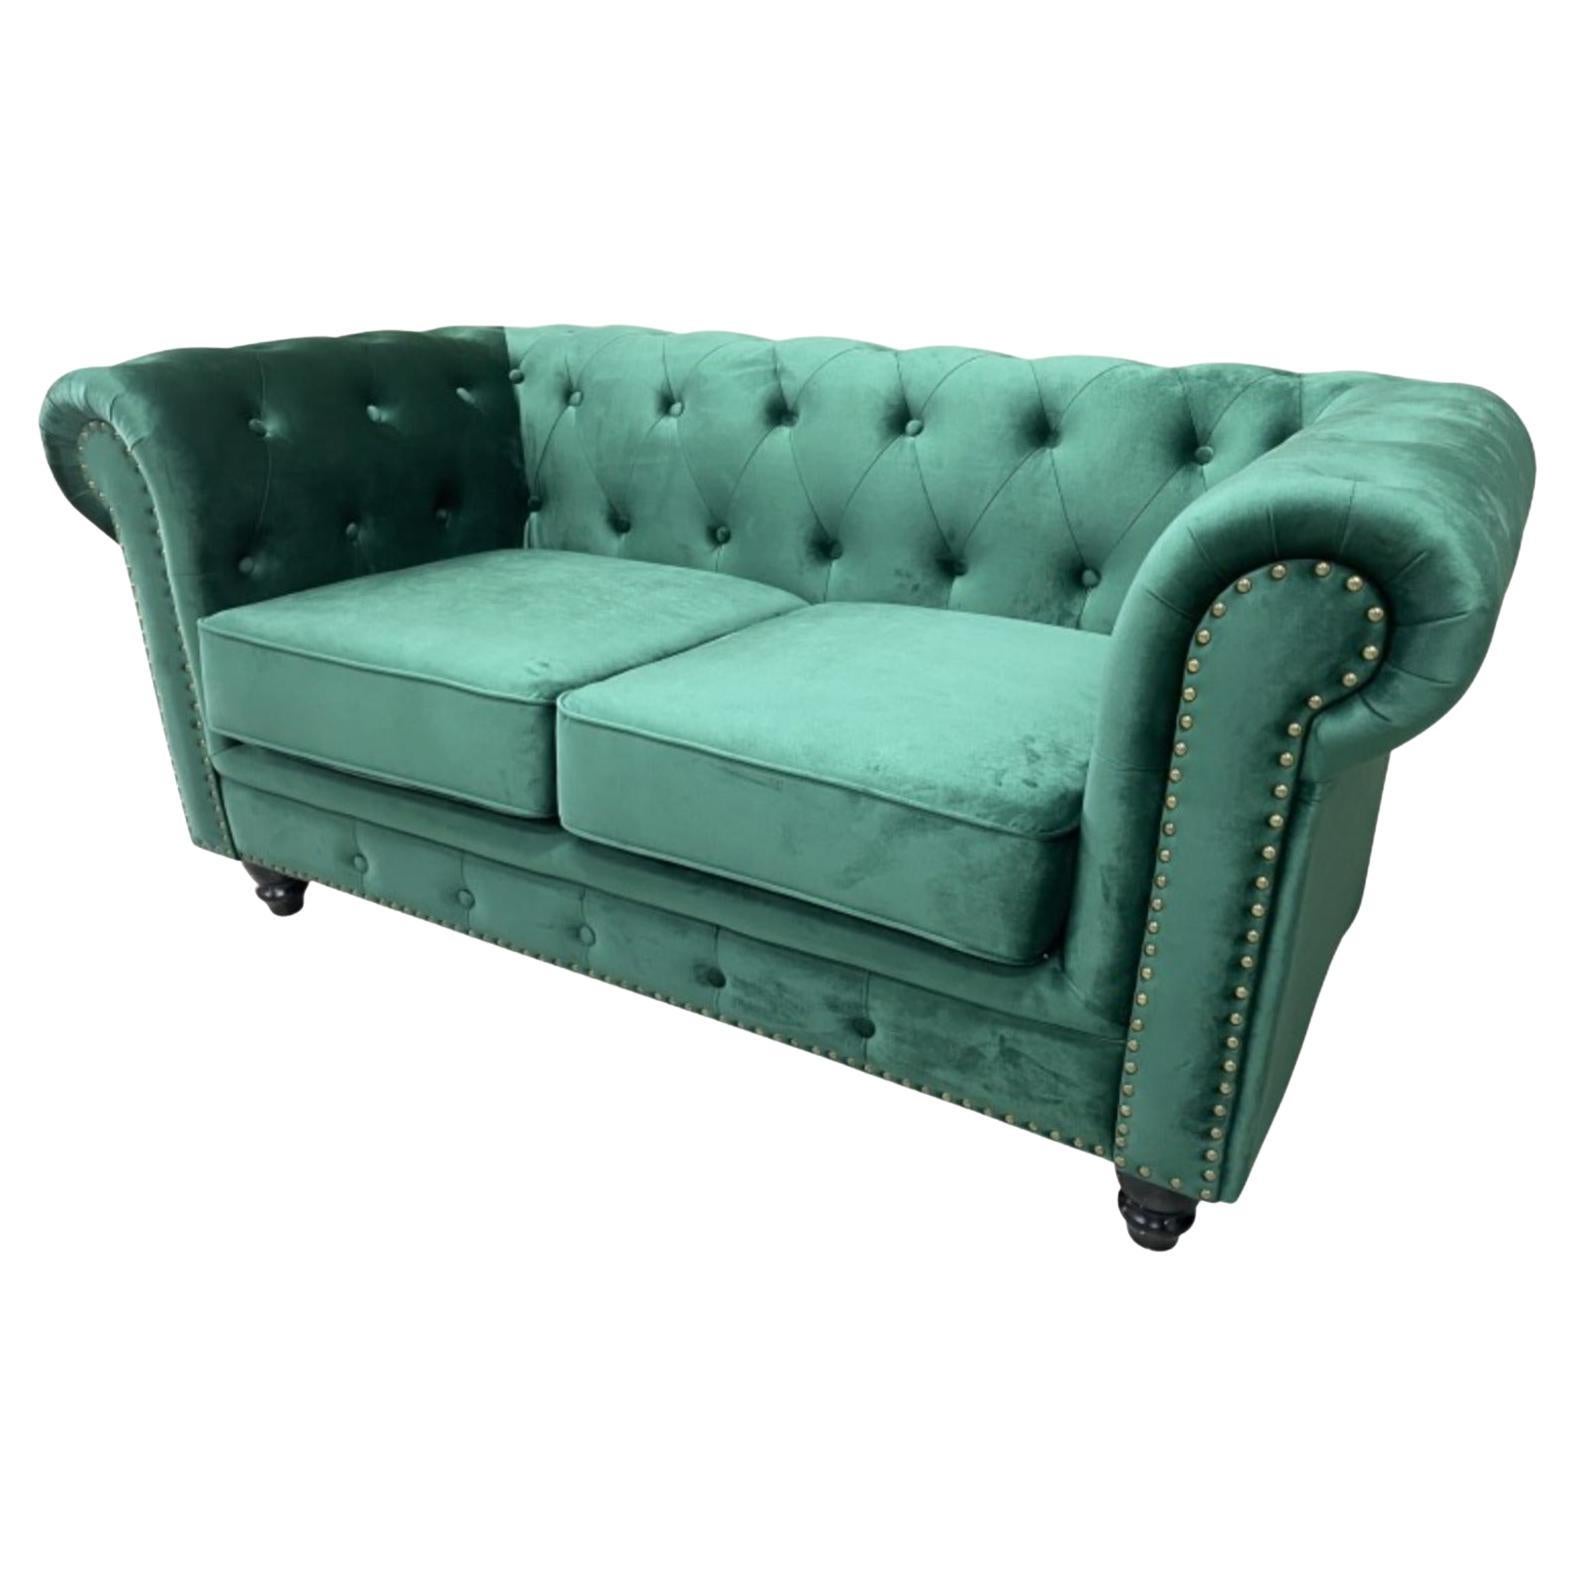 New Chester Premium 2 Seater Sofa, Green Velvet Upholstery For Sale